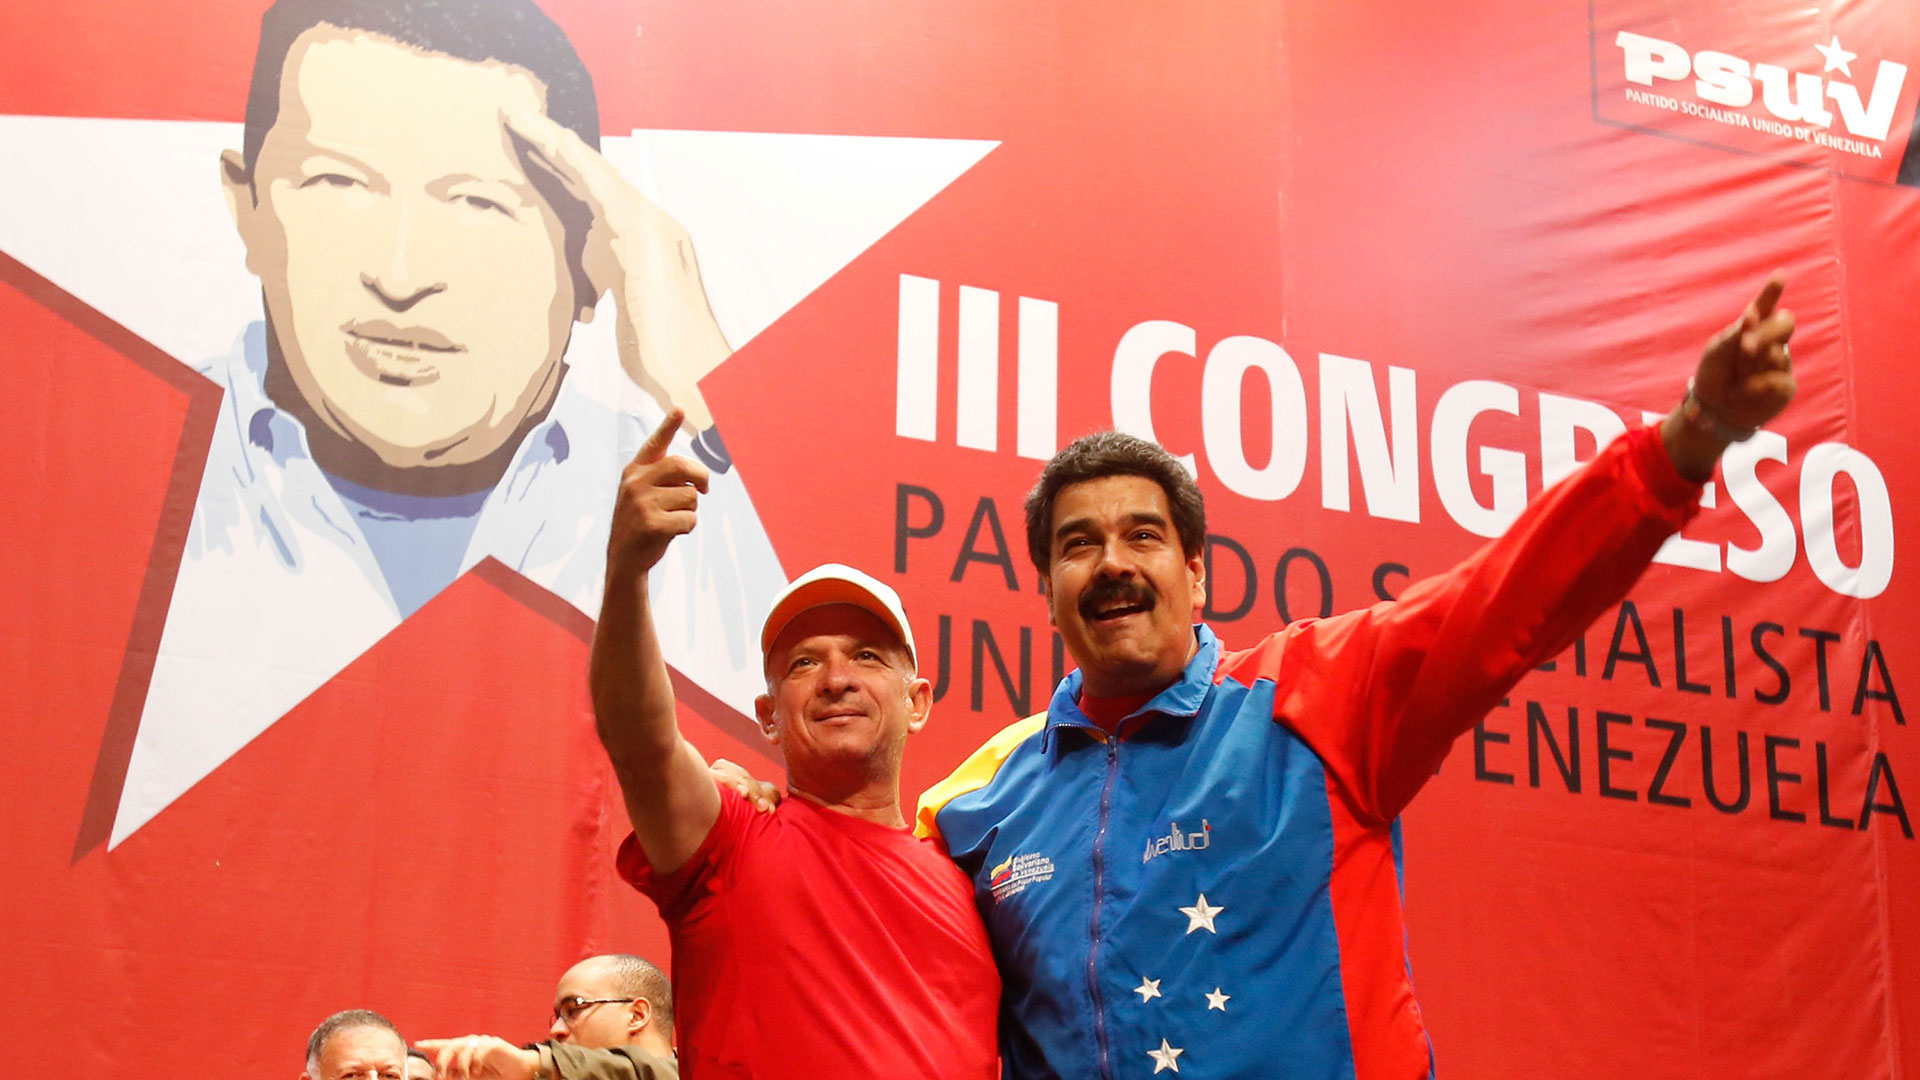 El "Pollo" Carvajal es un férreo crítico de régimen de Maduro, mientras es solicitado por las autoridades norteamericanas por cargos vinculados al narcotráfico (Reuters)